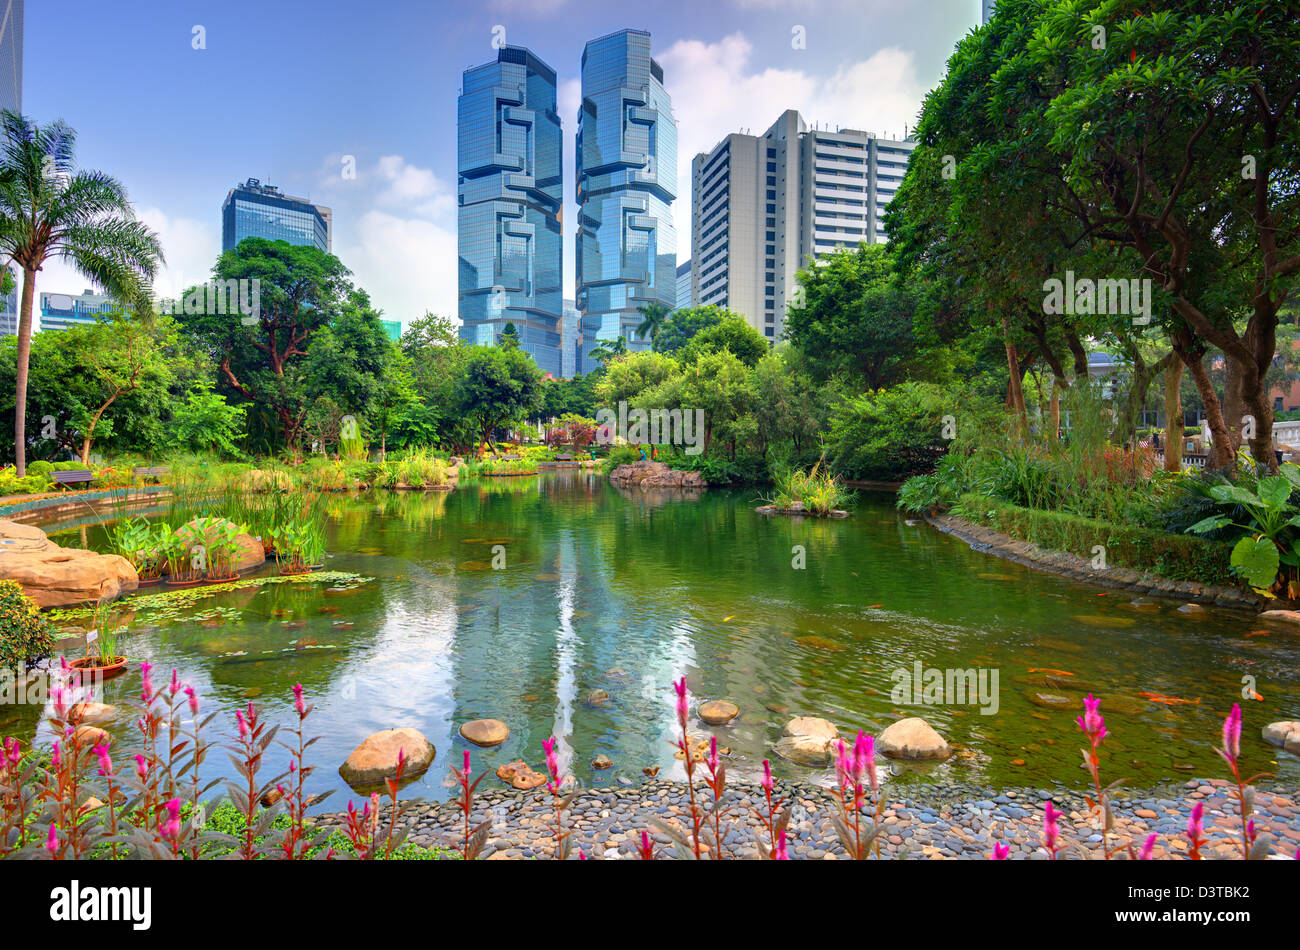 View of high rises from Hong Kong Park in Hong Kong, China Stock Photo